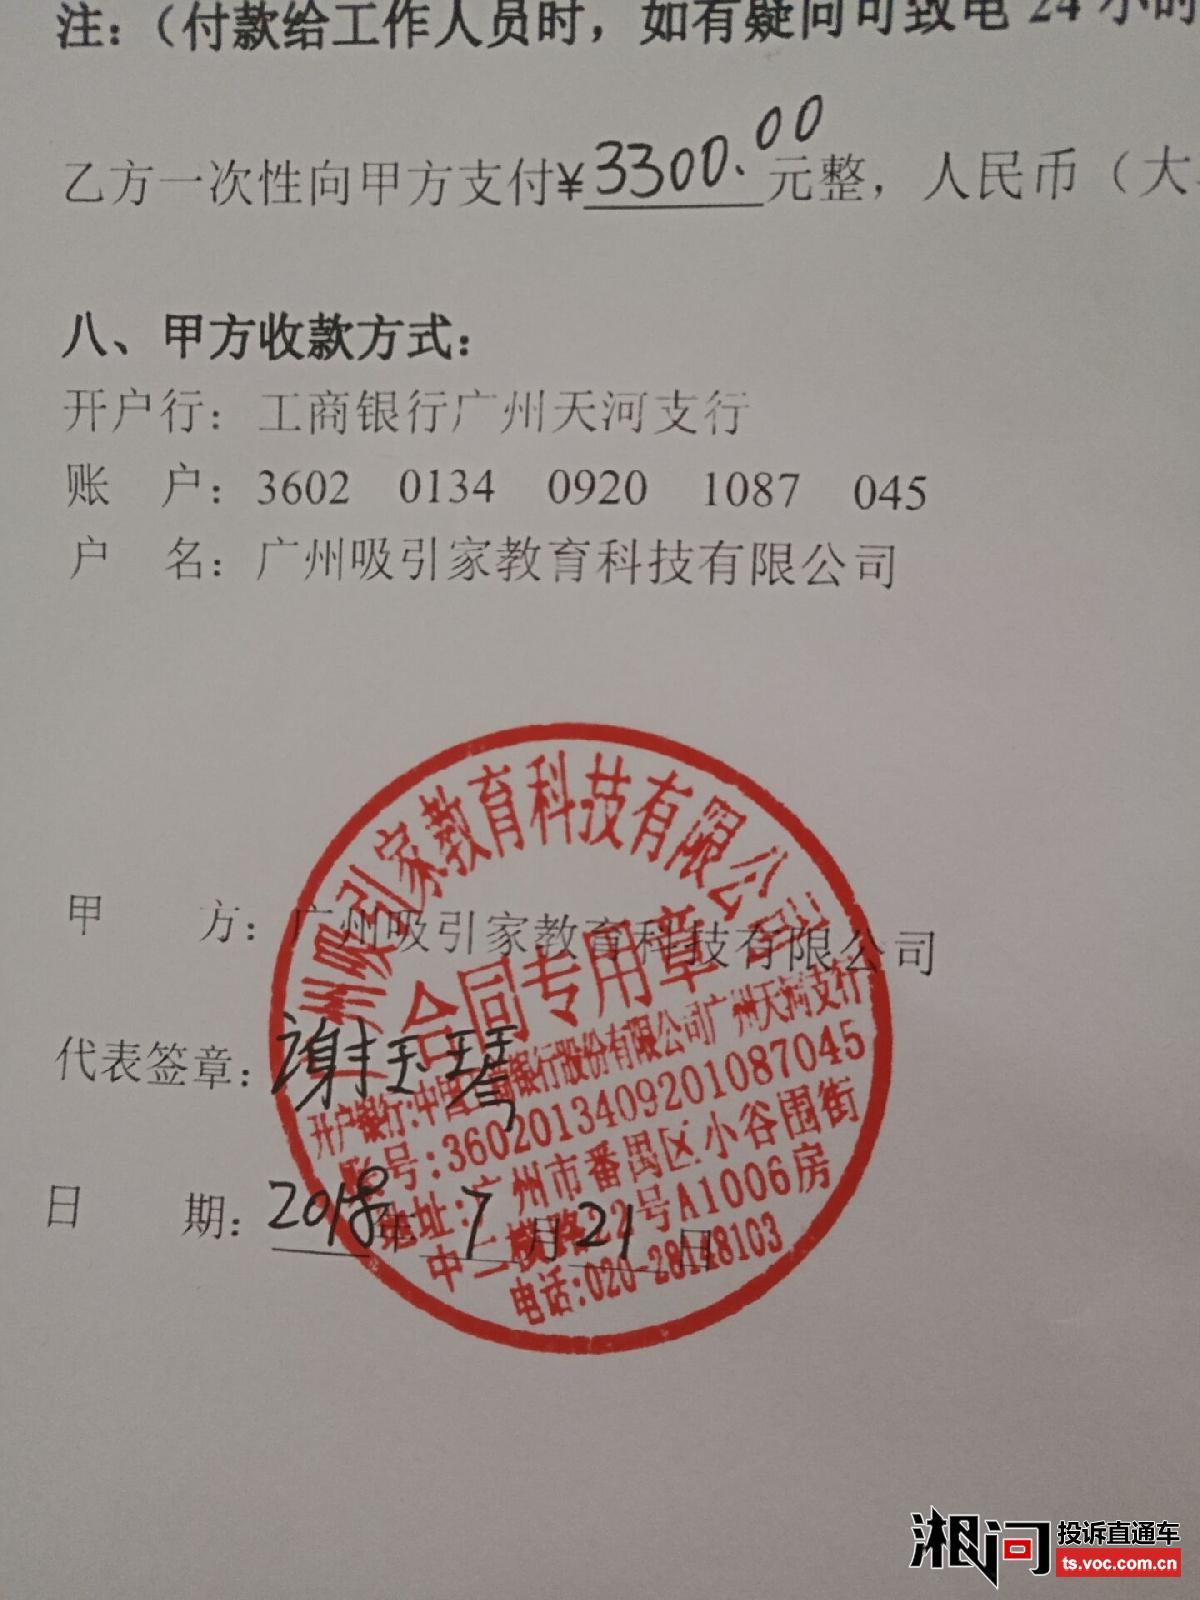 投诉广州吸引家教育科技有限公司